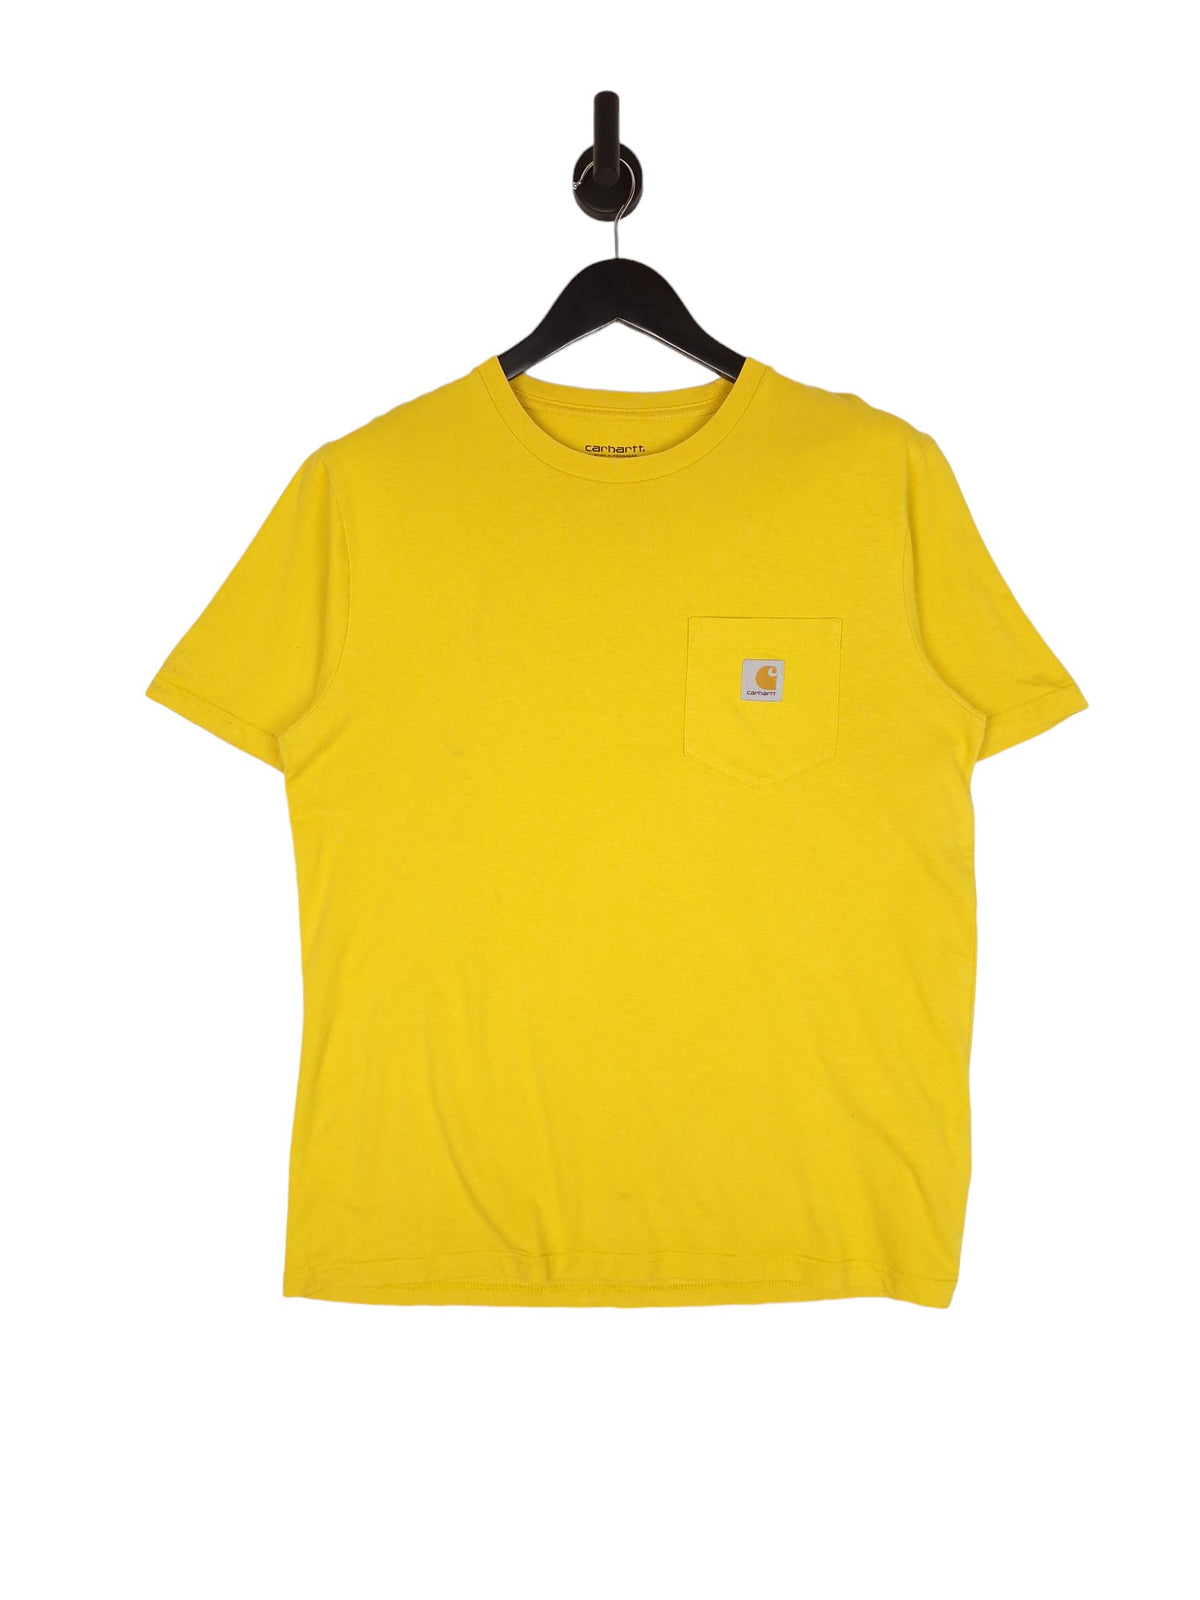 Carhartt Short Sleeve Pocket T-Shirt - Size Medium